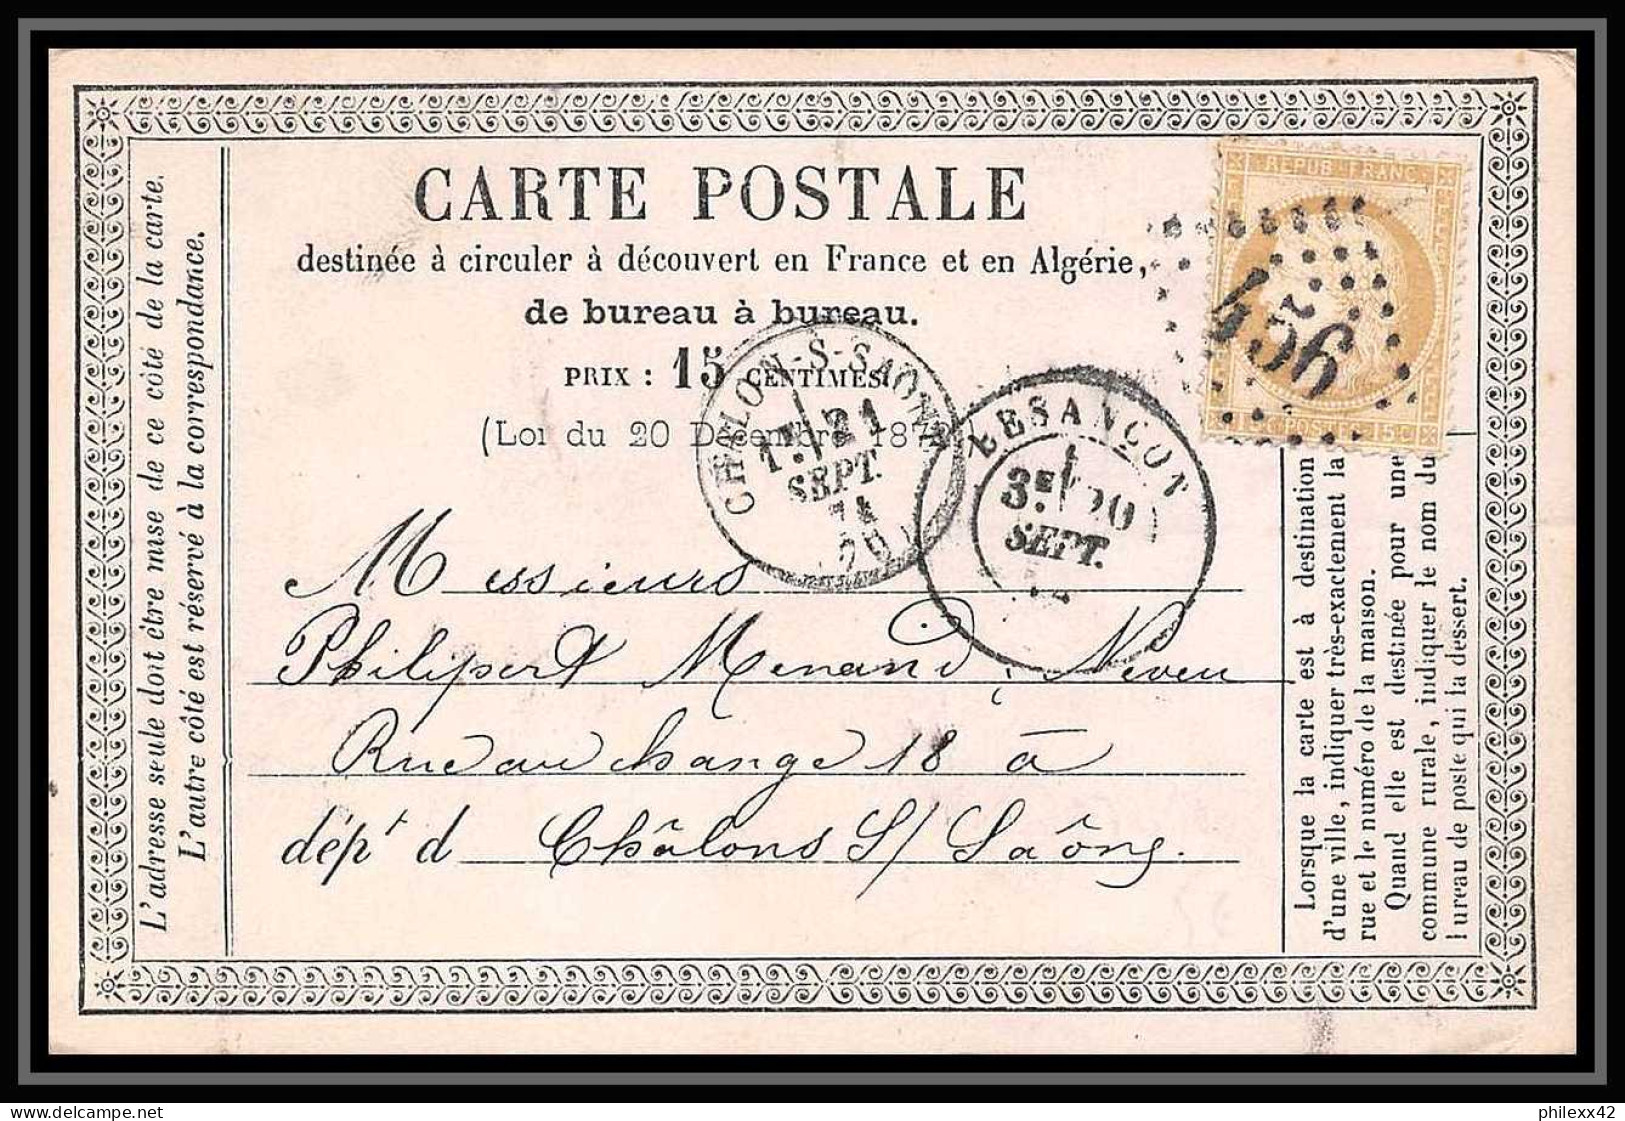 8746 LAC Entete Moise N 55 Ceres 15c GC 456 Besancon Doubs 1874 France Precurseur Carte Postale (postcard) - Precursor Cards